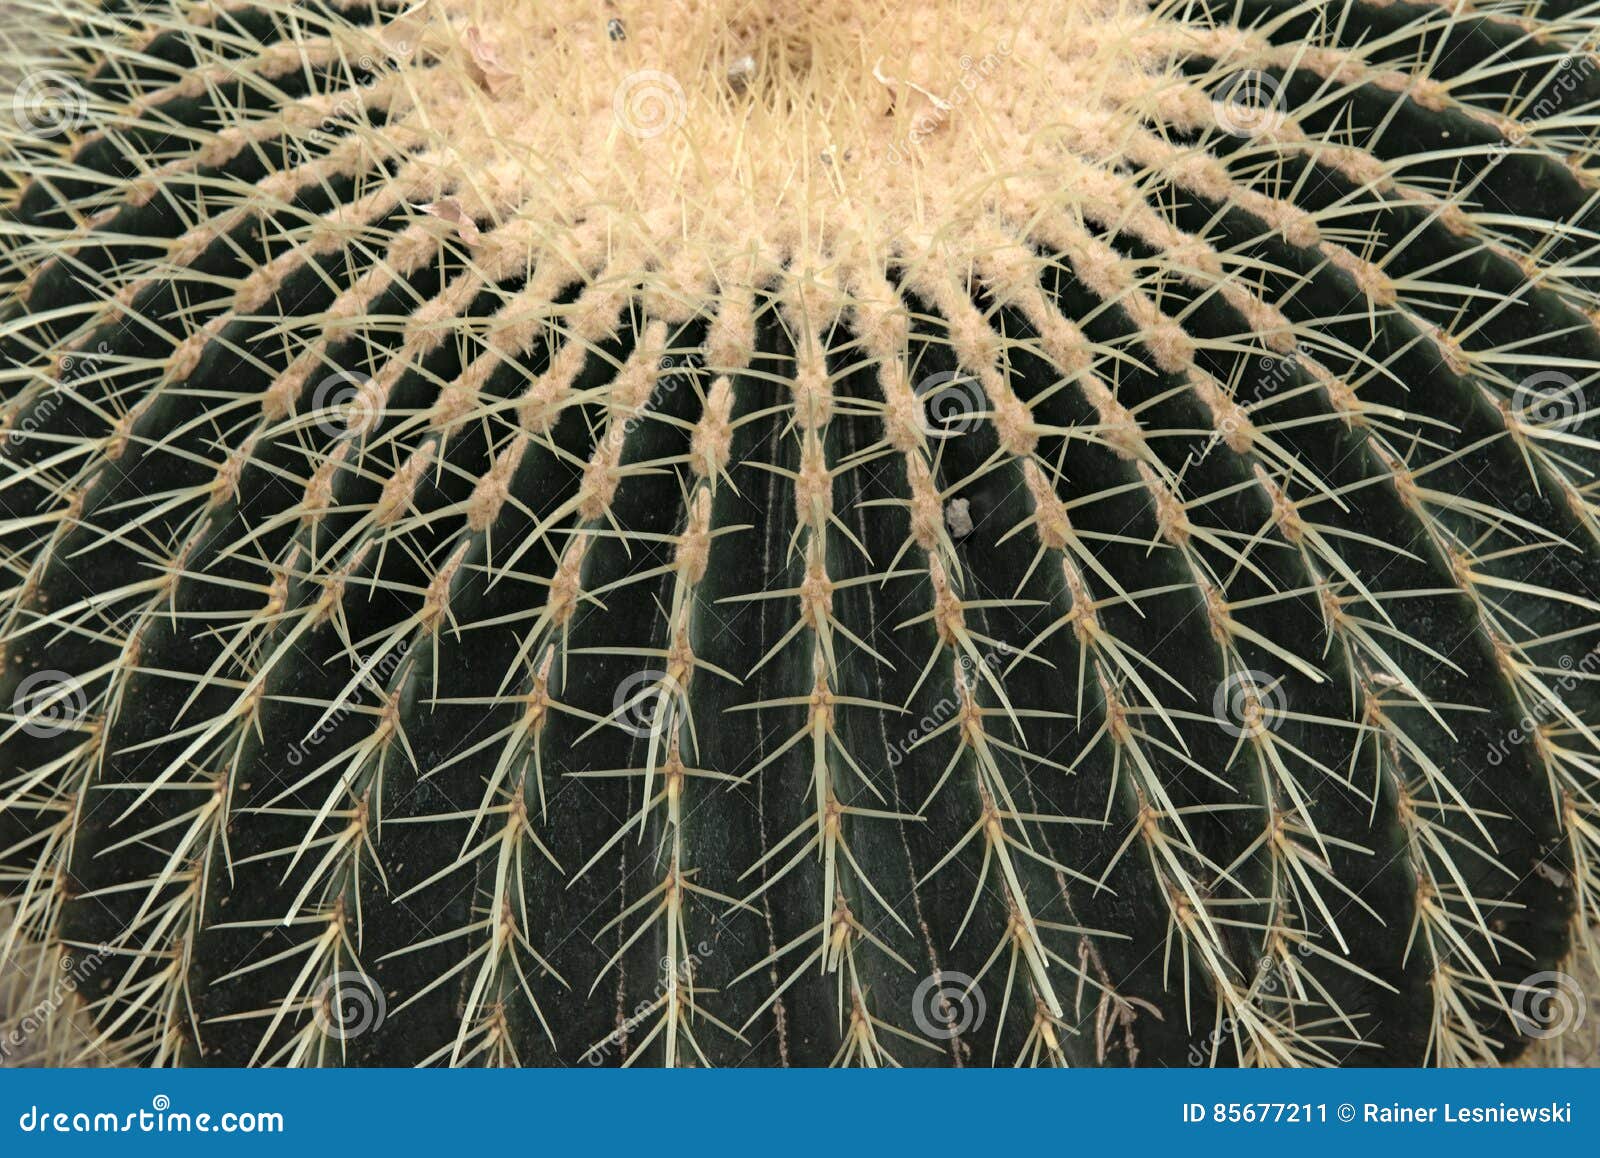 closeup of echinocactus grusonii cactus, cactacea